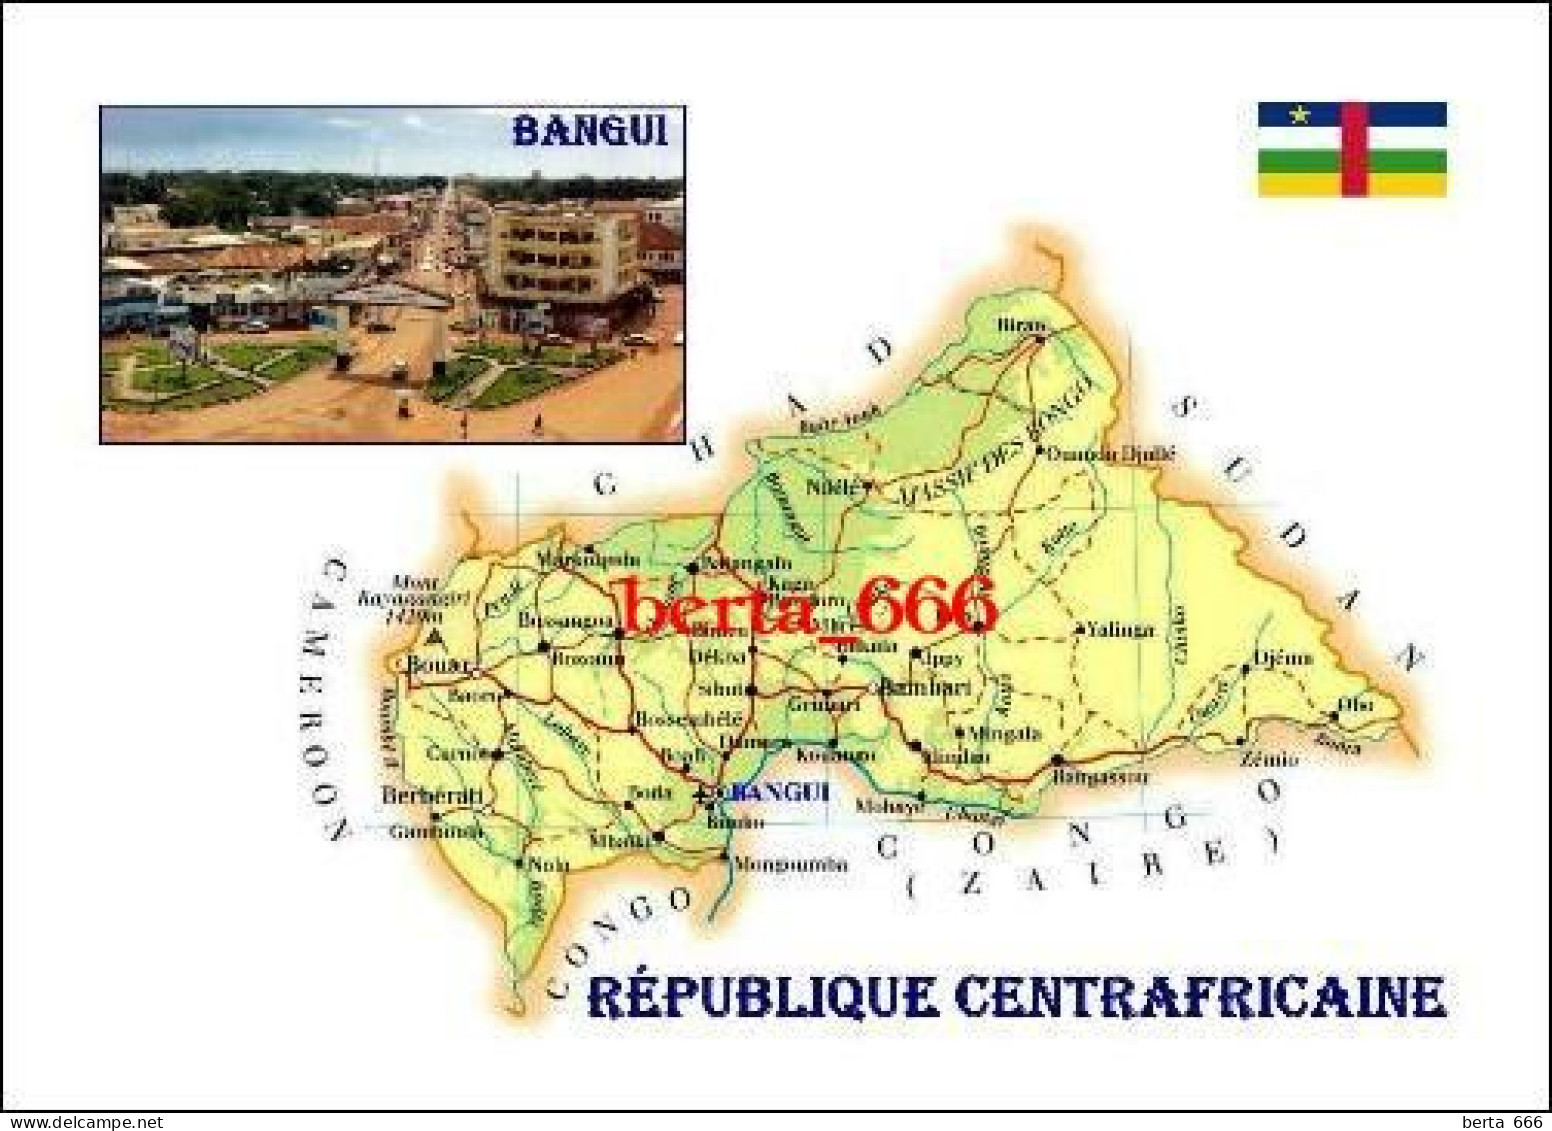 Central African Republic Country Map New Postcard * Carte Geographique * Landkarte - Centrafricaine (République)